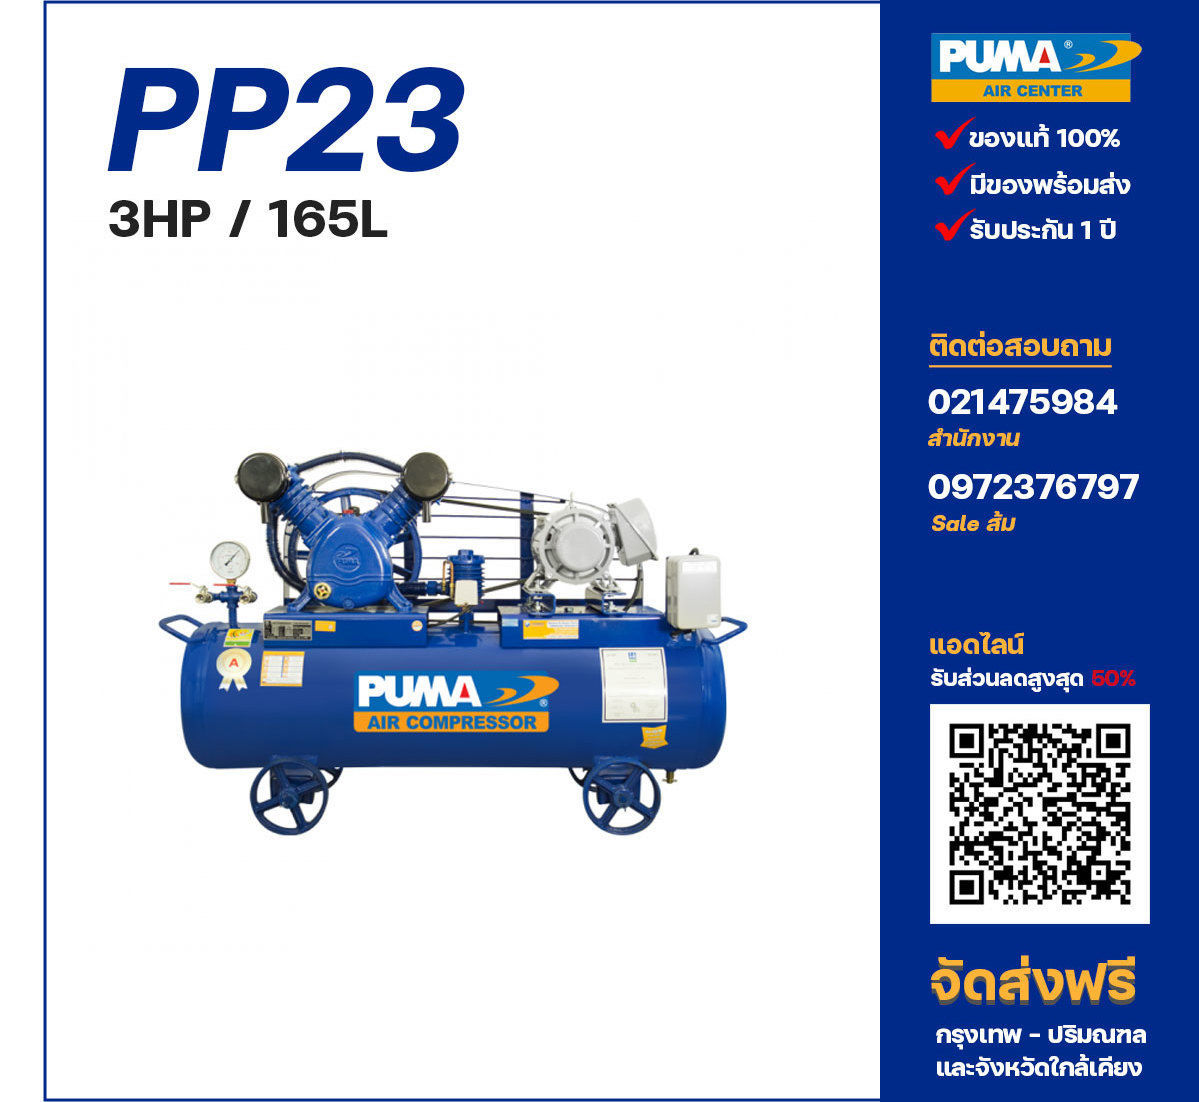 ปั๊มลมพูม่า PUMA รุ่น PP23 ขนาด 3 แรงม้า / 165 ลิตร